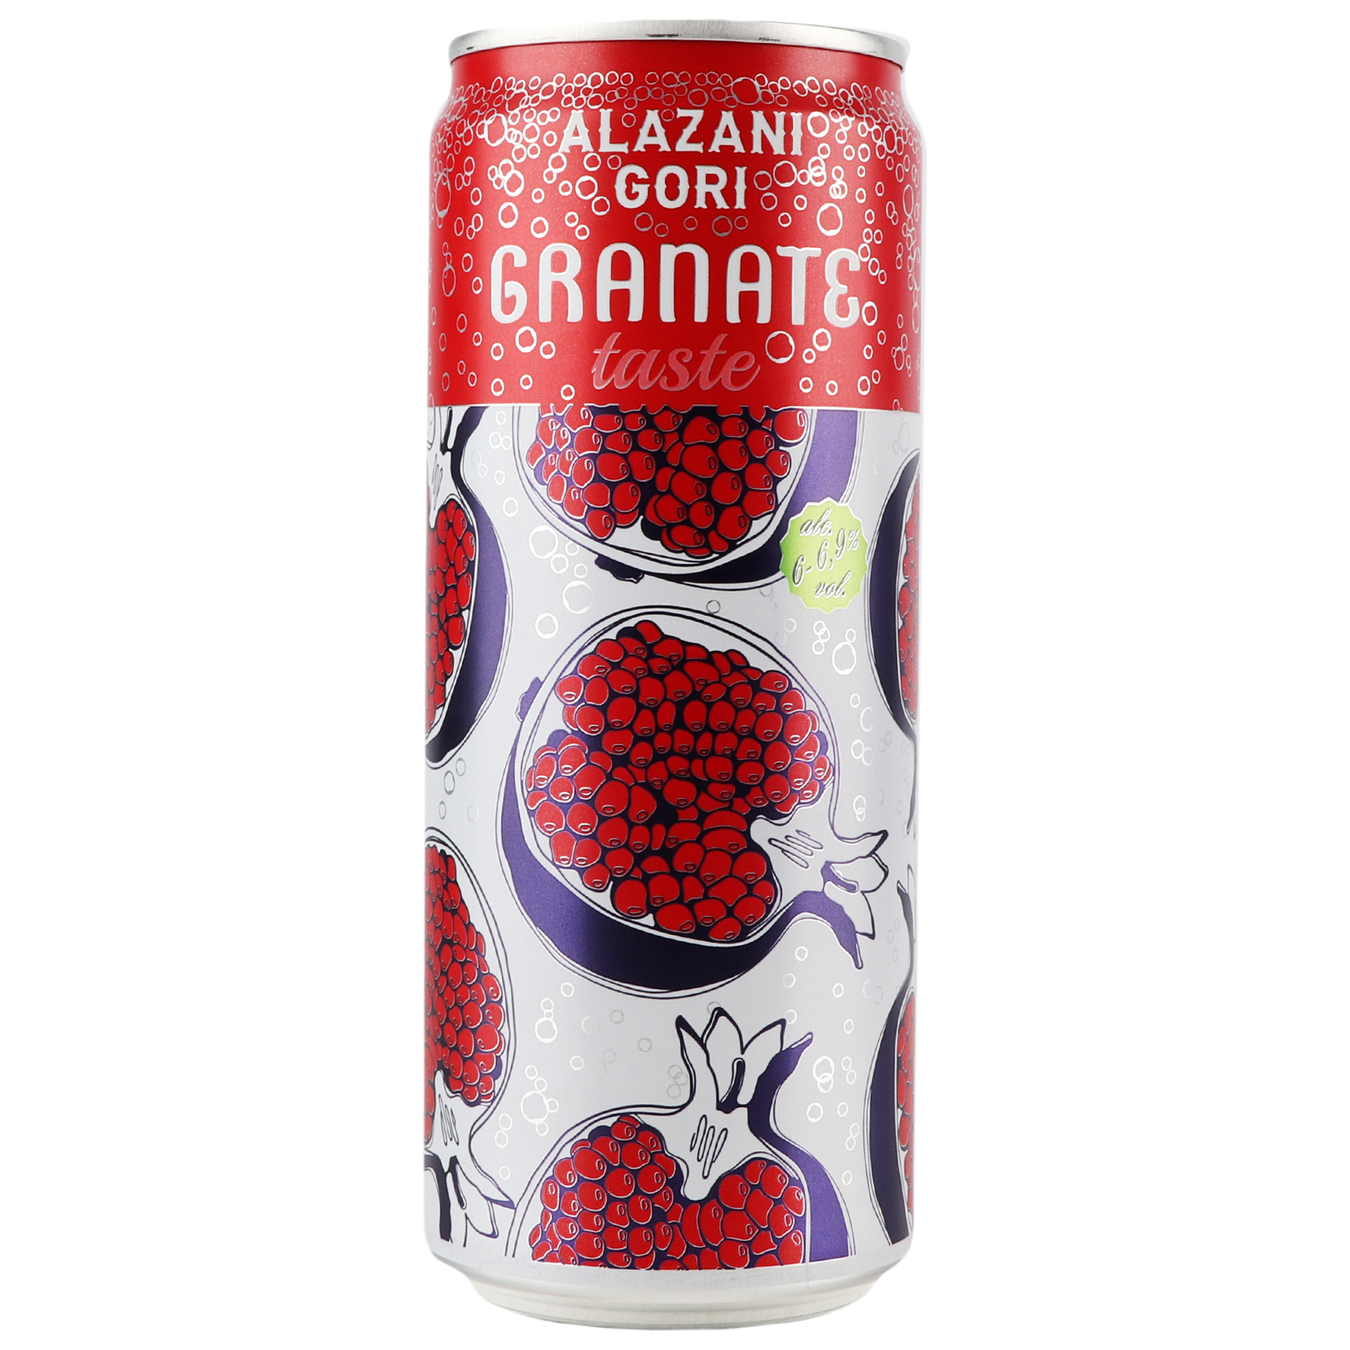 Sparkling wine drink Alazani Gori red semi-sweet 6-6.9% 0.33l